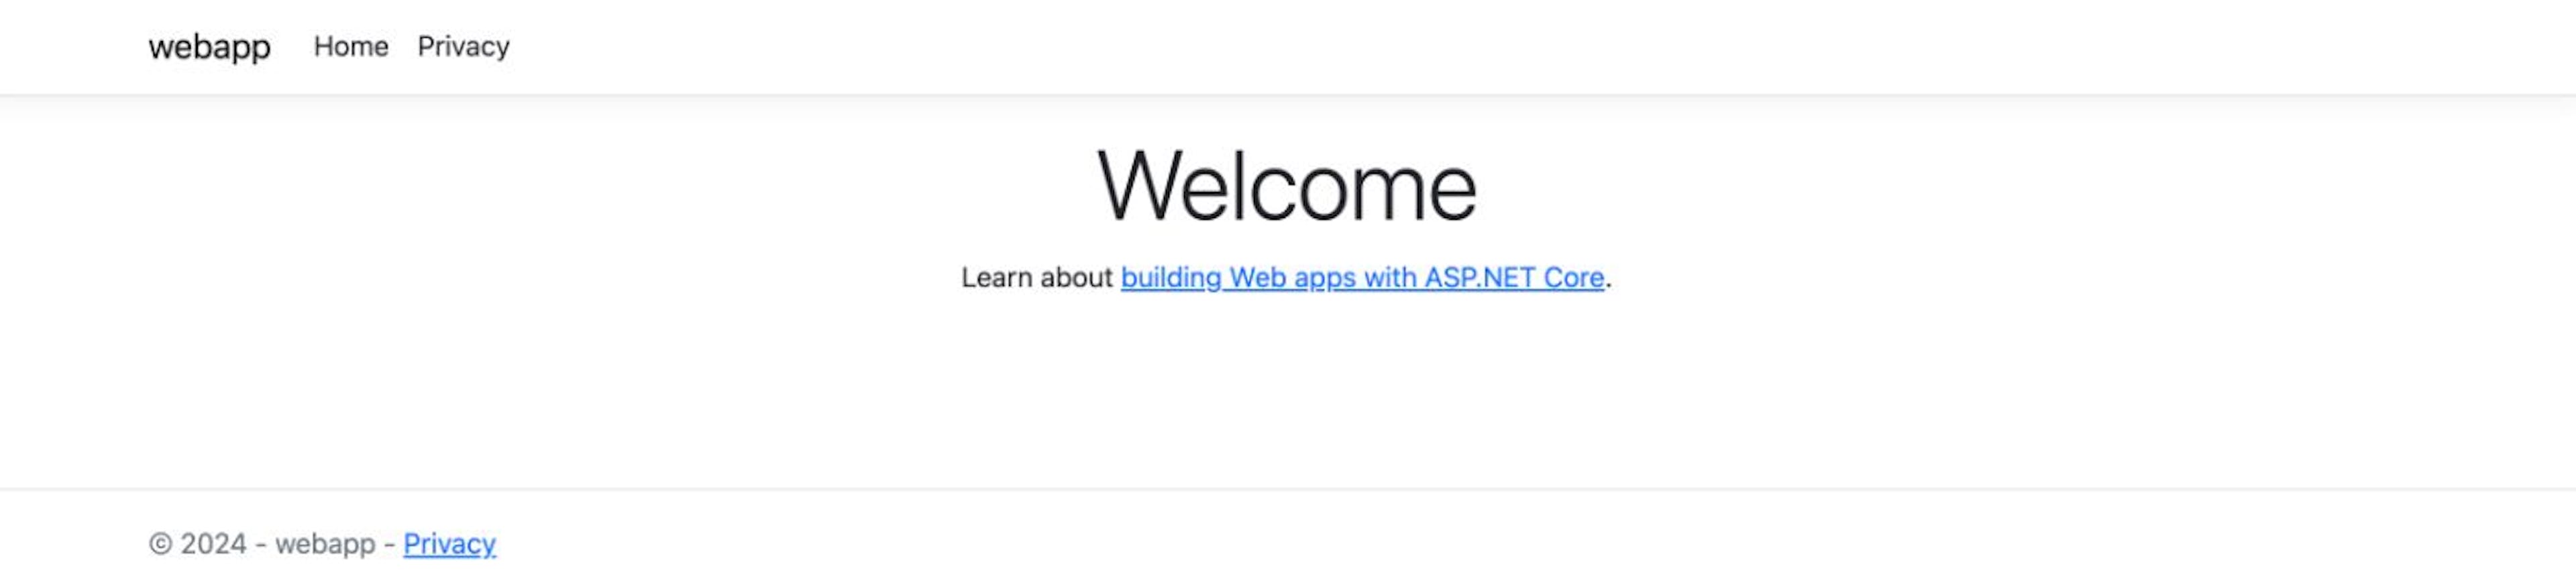 Ứng dụng web ASP.NET Core: Trang chủ